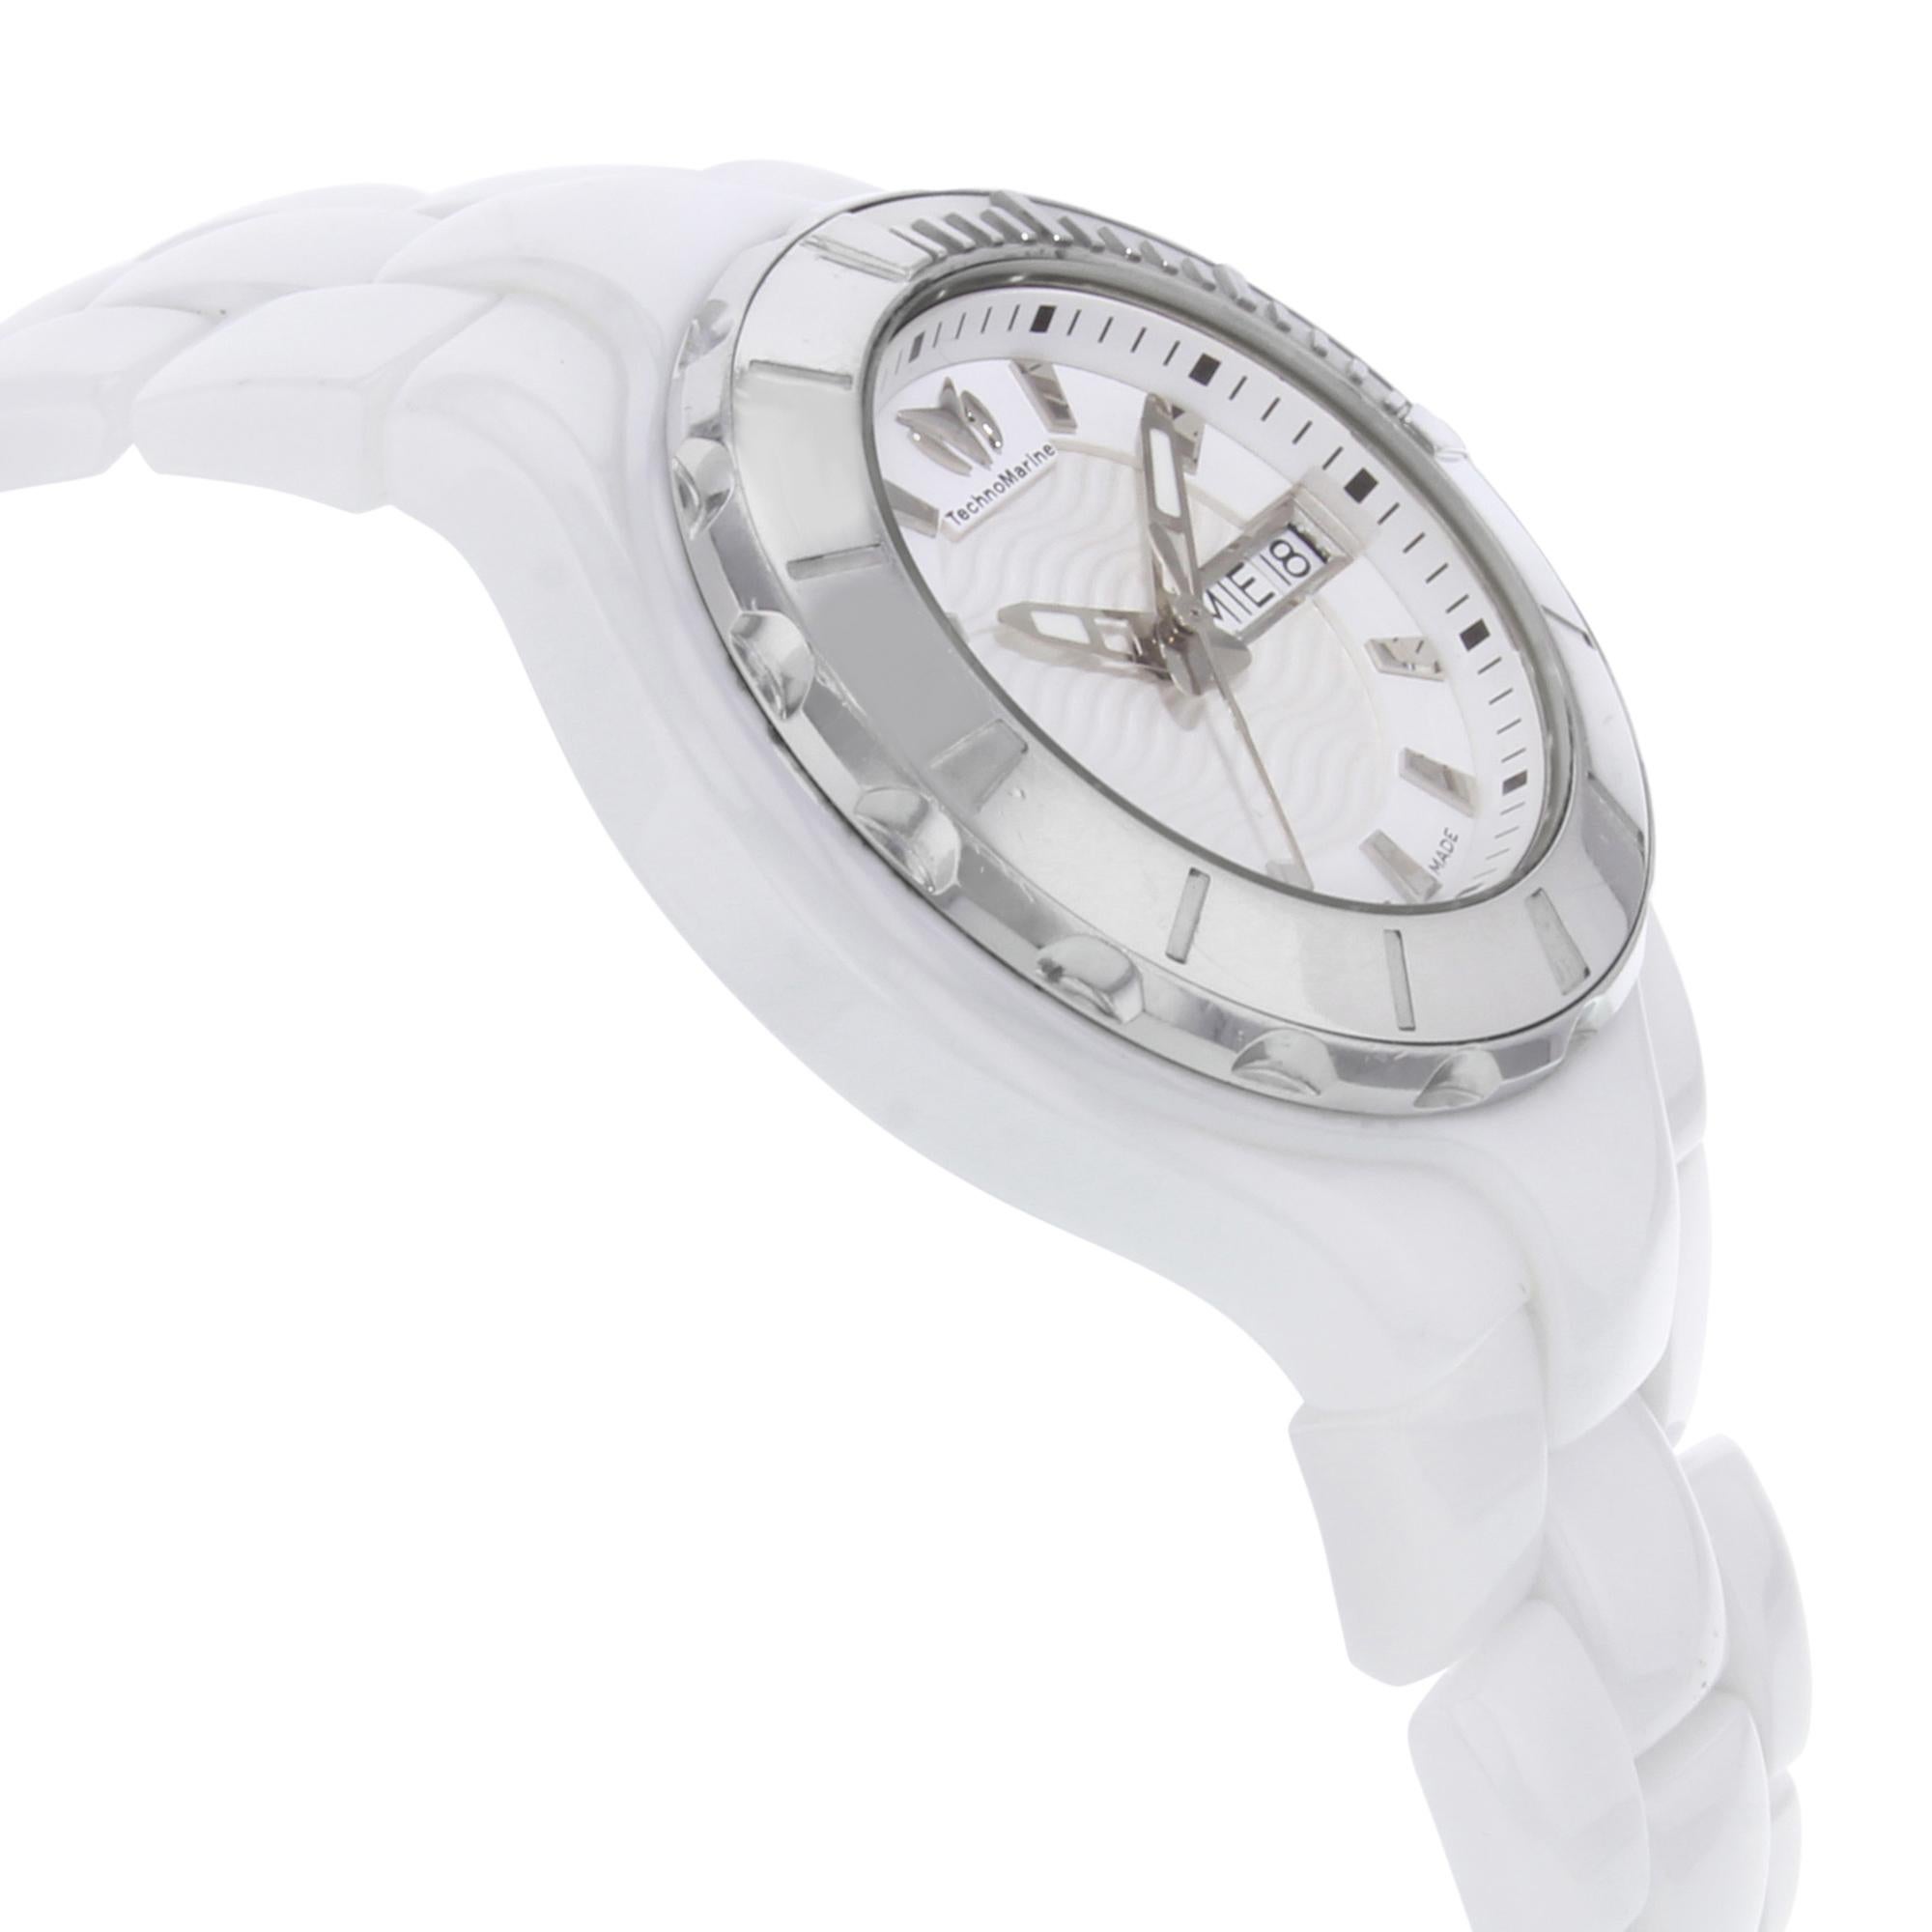 technomarine ceramic watch